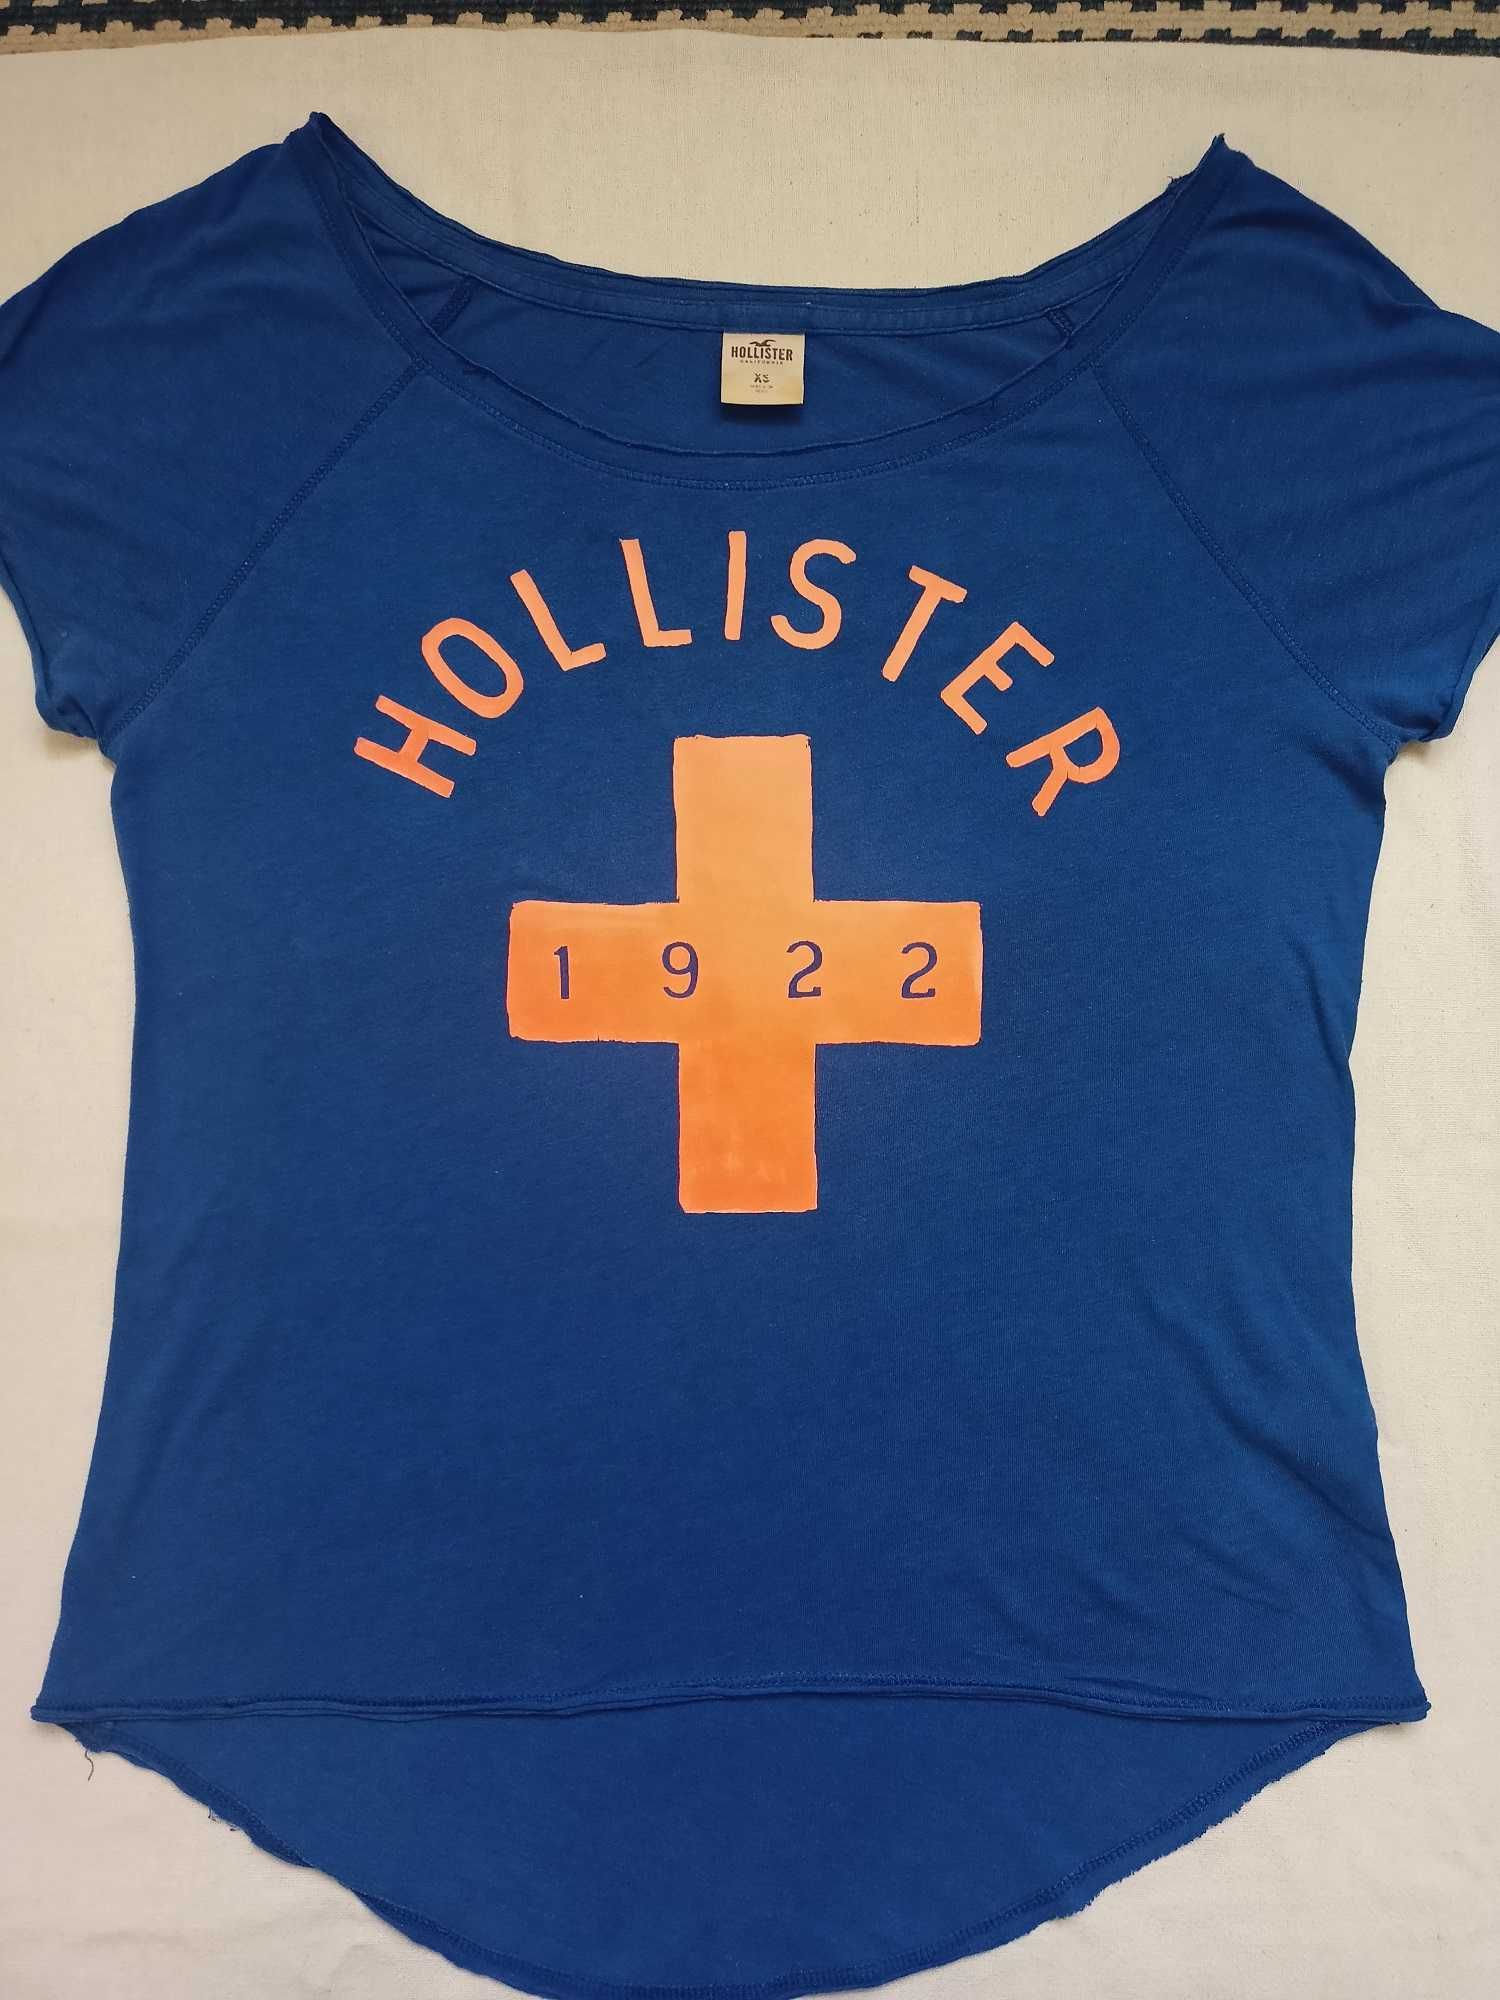 Hollister,  Gilly Hicks  zestaw 5szt t-shirt bluzka damska XS